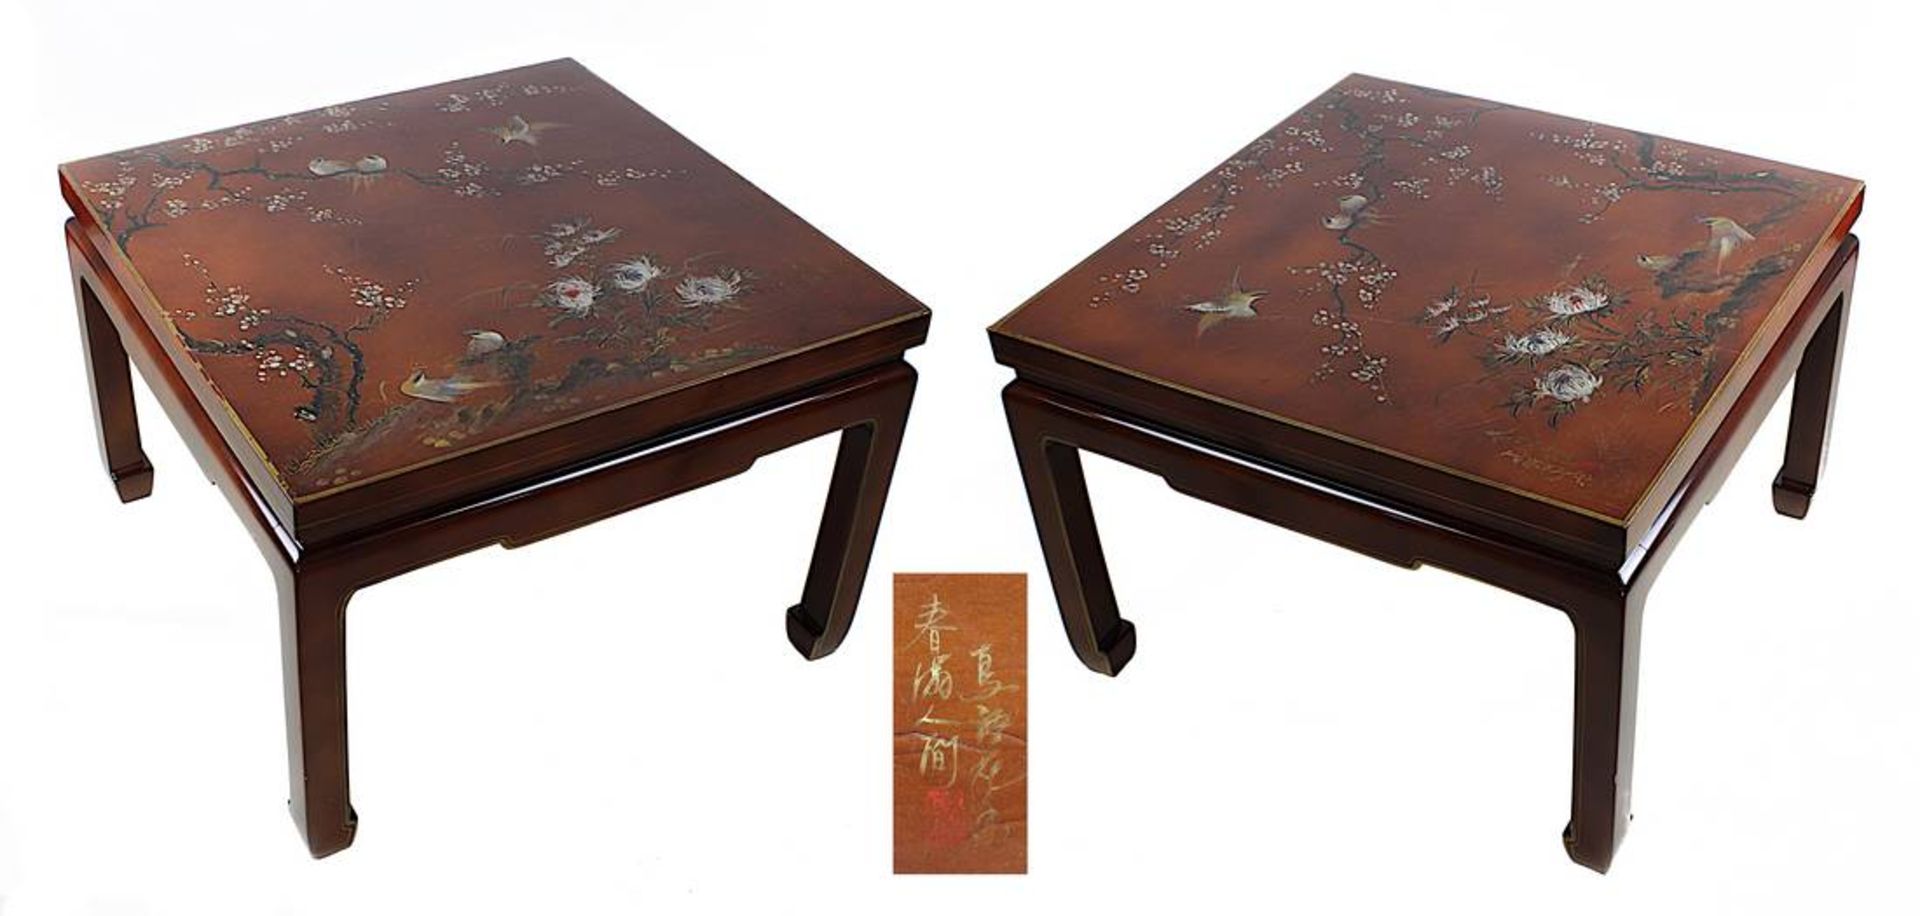 Paar Lacktische, China 2. Hälfte 20. Jh., rot-brauner Lack, Platten farbig bemalt mit Vögeln und